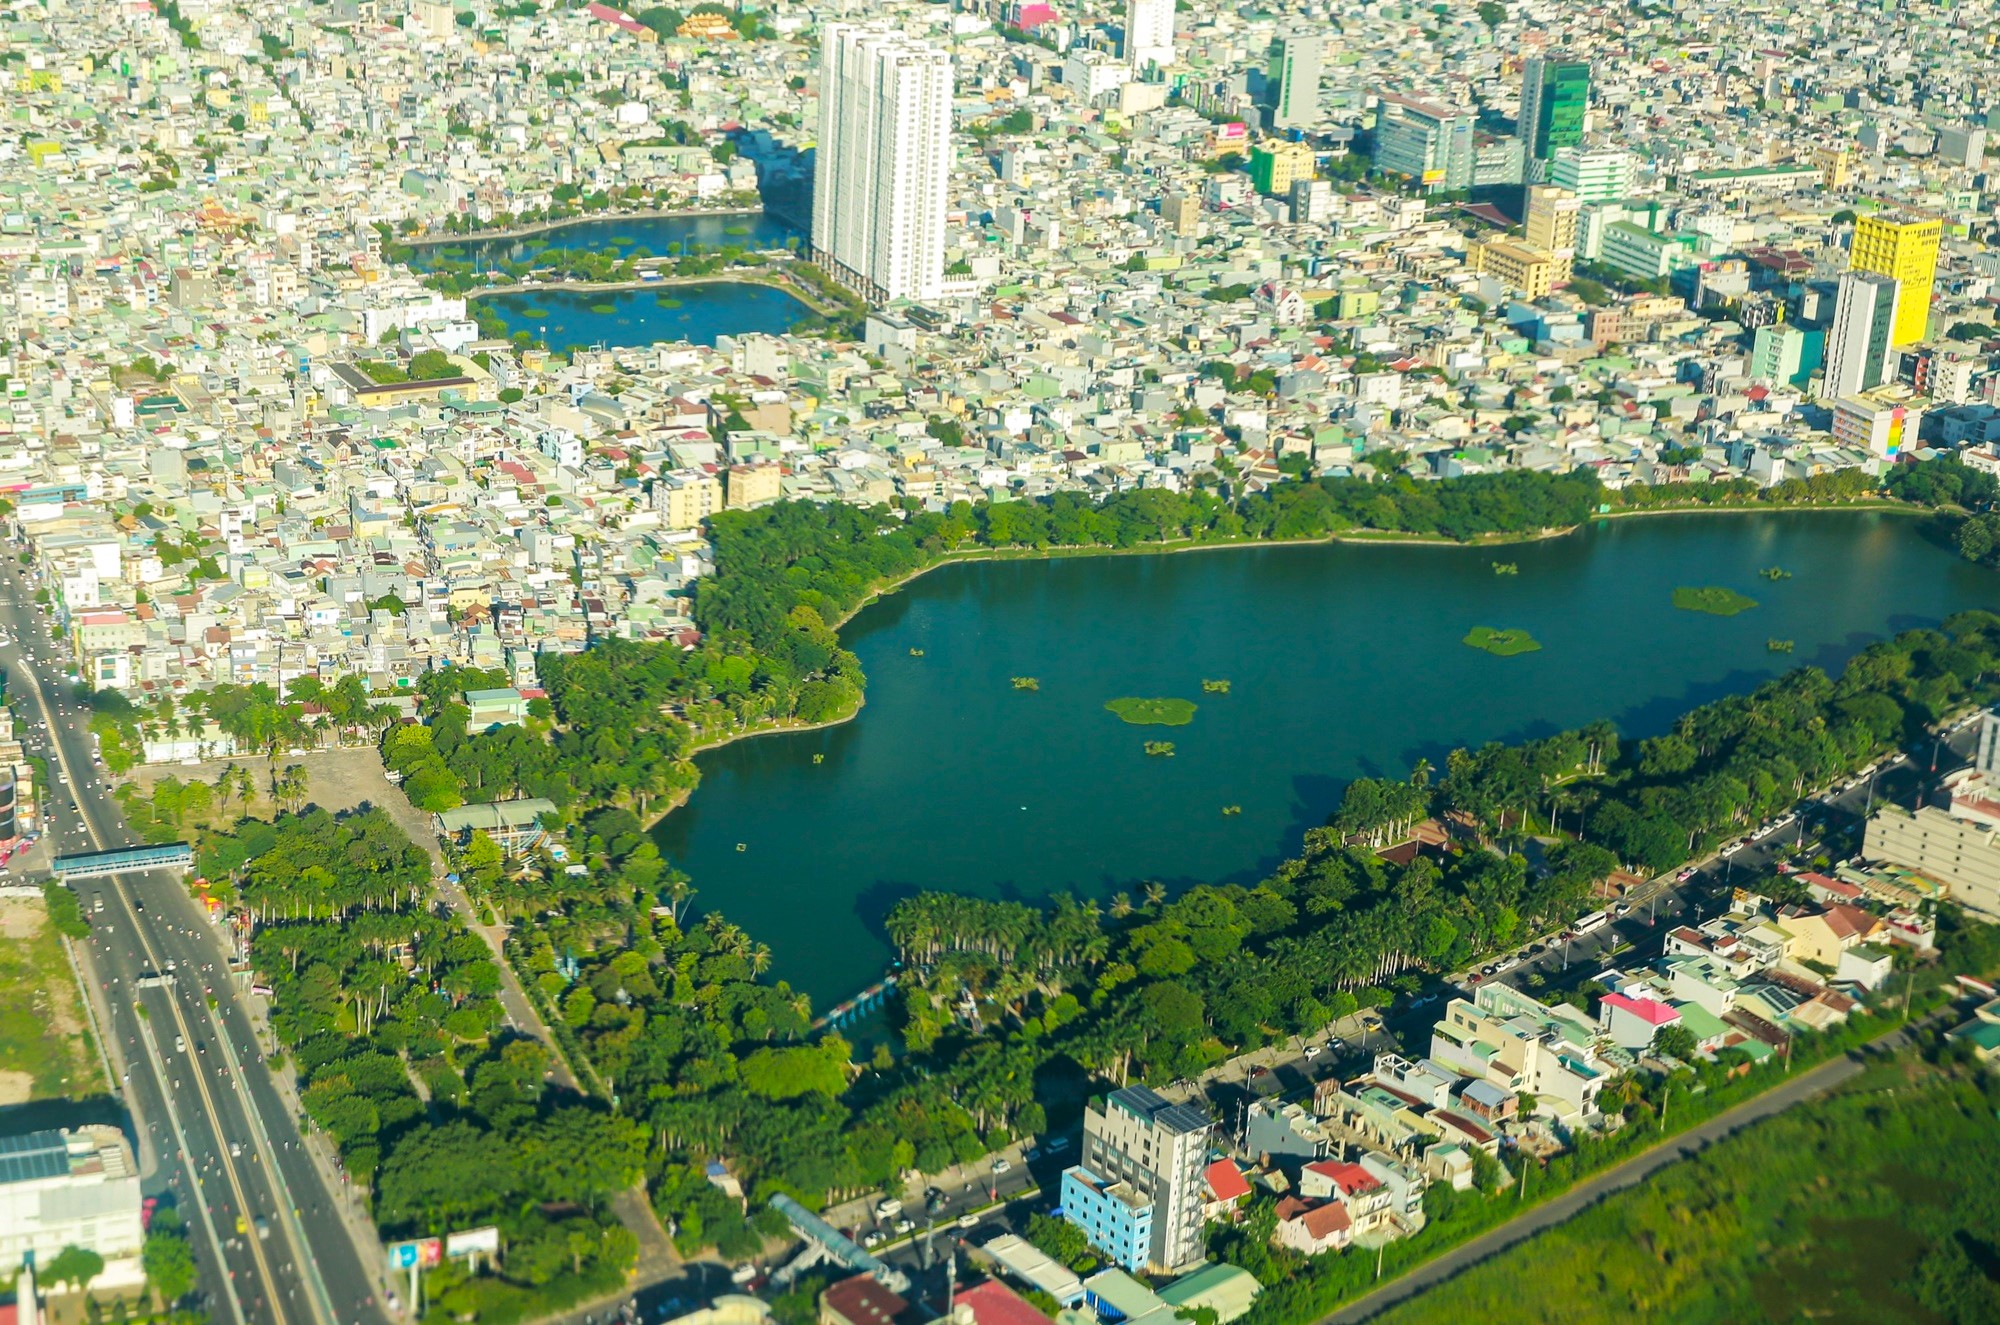 Cận cảnh công viên lớn nhất Đà Nẵng vừa được đề xuất hơn 670 tỷ đồng để cải tạo - Ảnh 1.